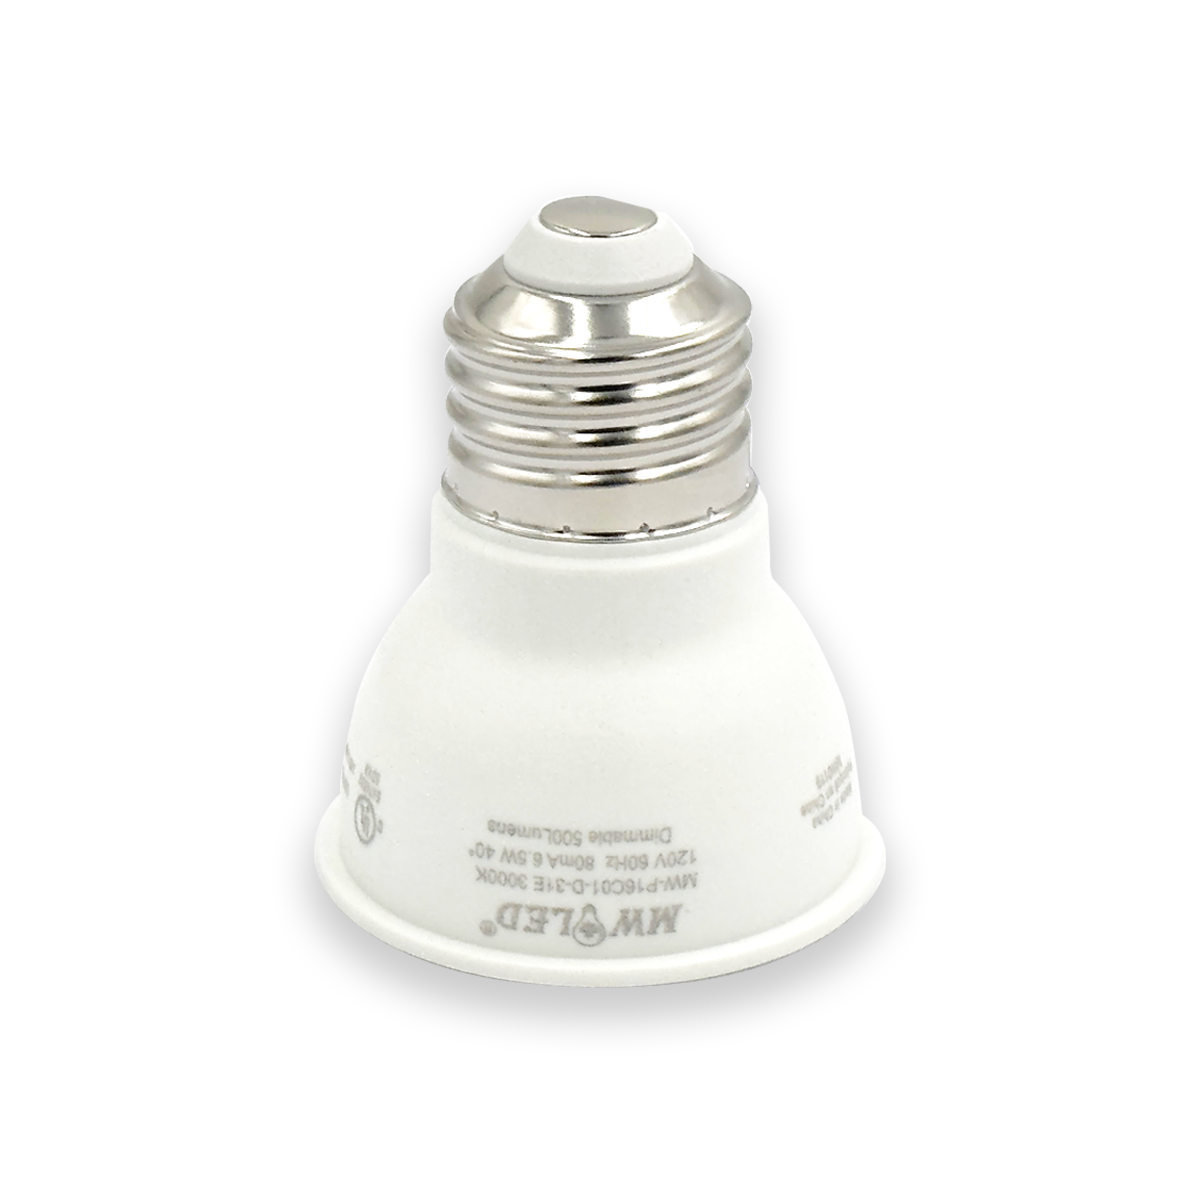 PAR16 LED Light Bulbs, Dimmable SpotLight,6.5W=75W,500 Lumens, Energy Star cUL Listed (3000K Warm White)